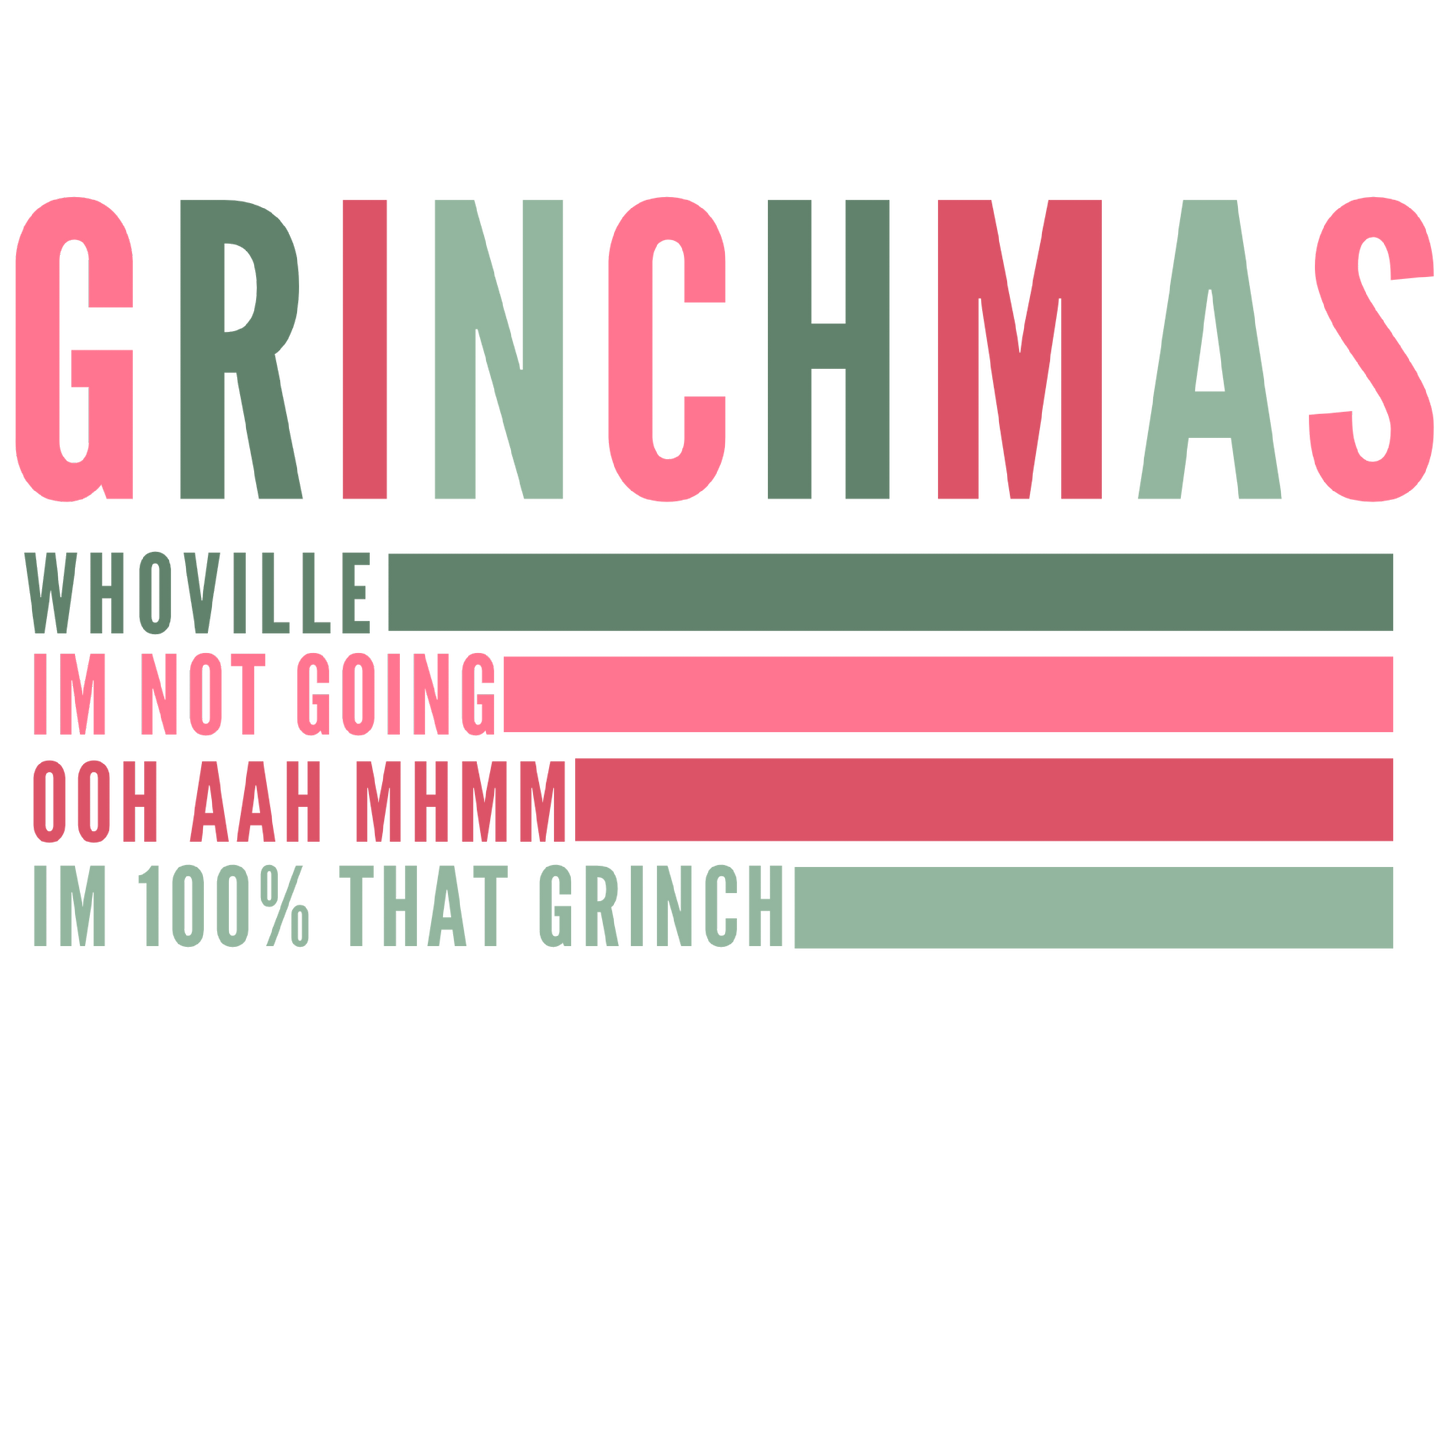 CHRISTMAS GRINCHMAS